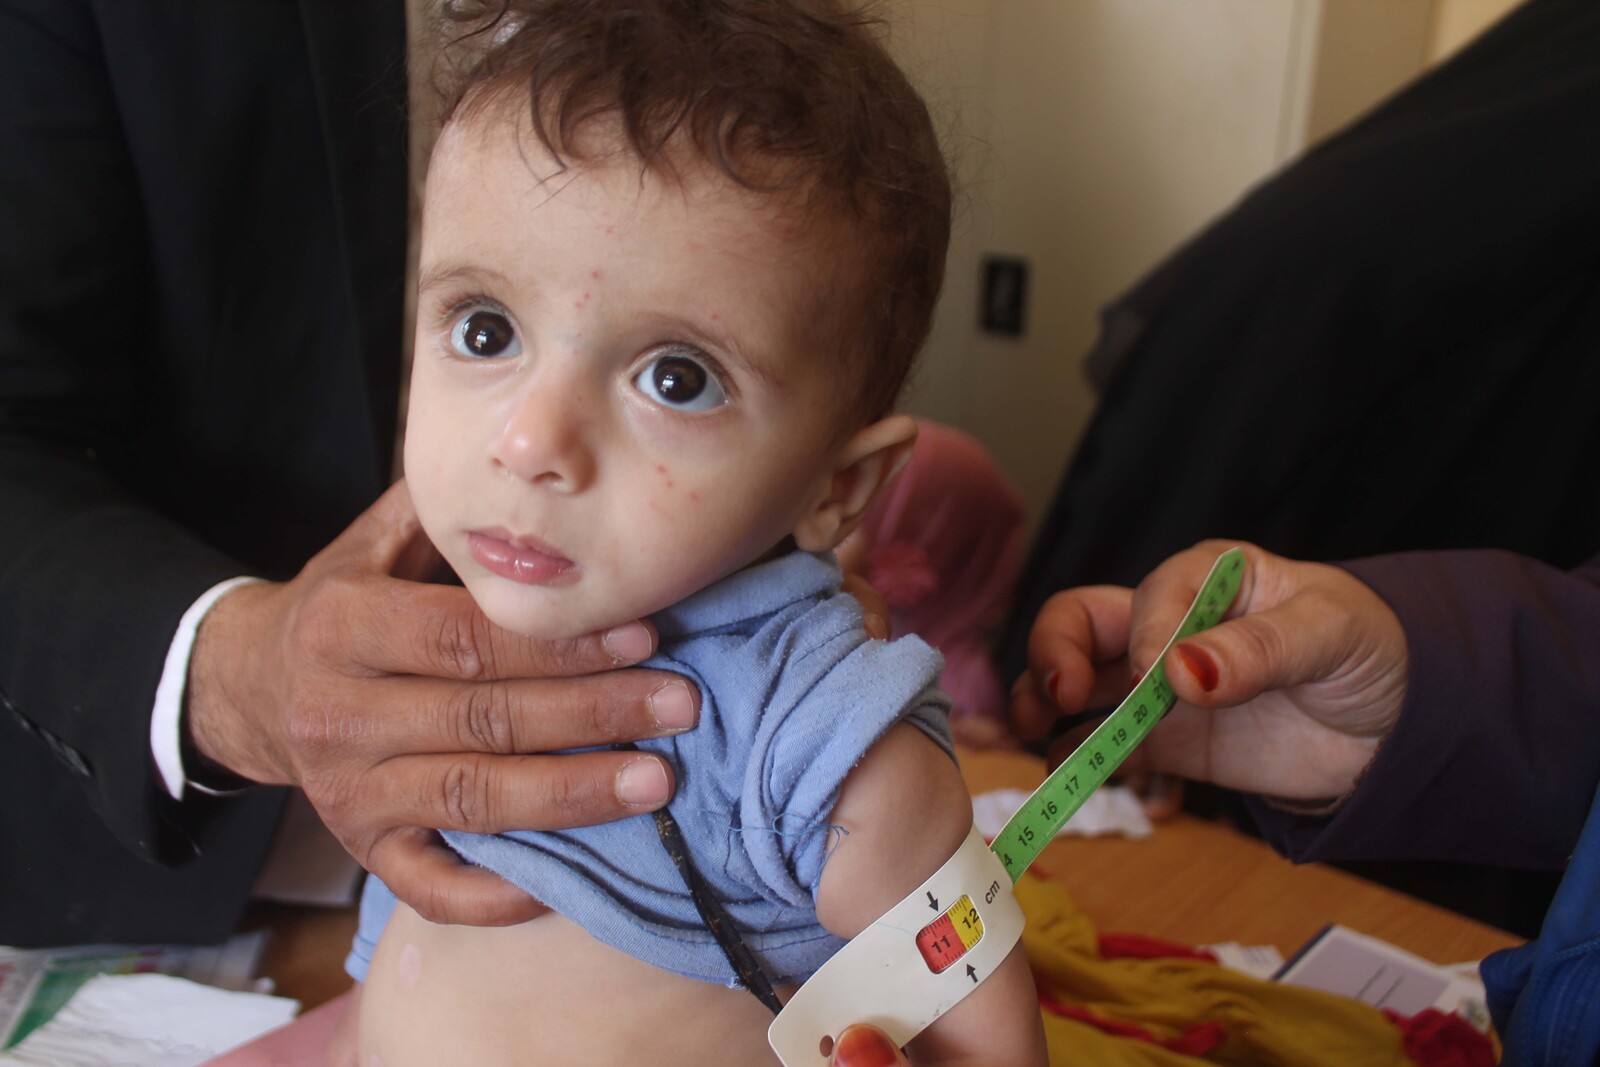 Einem Kind im Jemen wird mit dem Hungermaßband der Arm vermessen